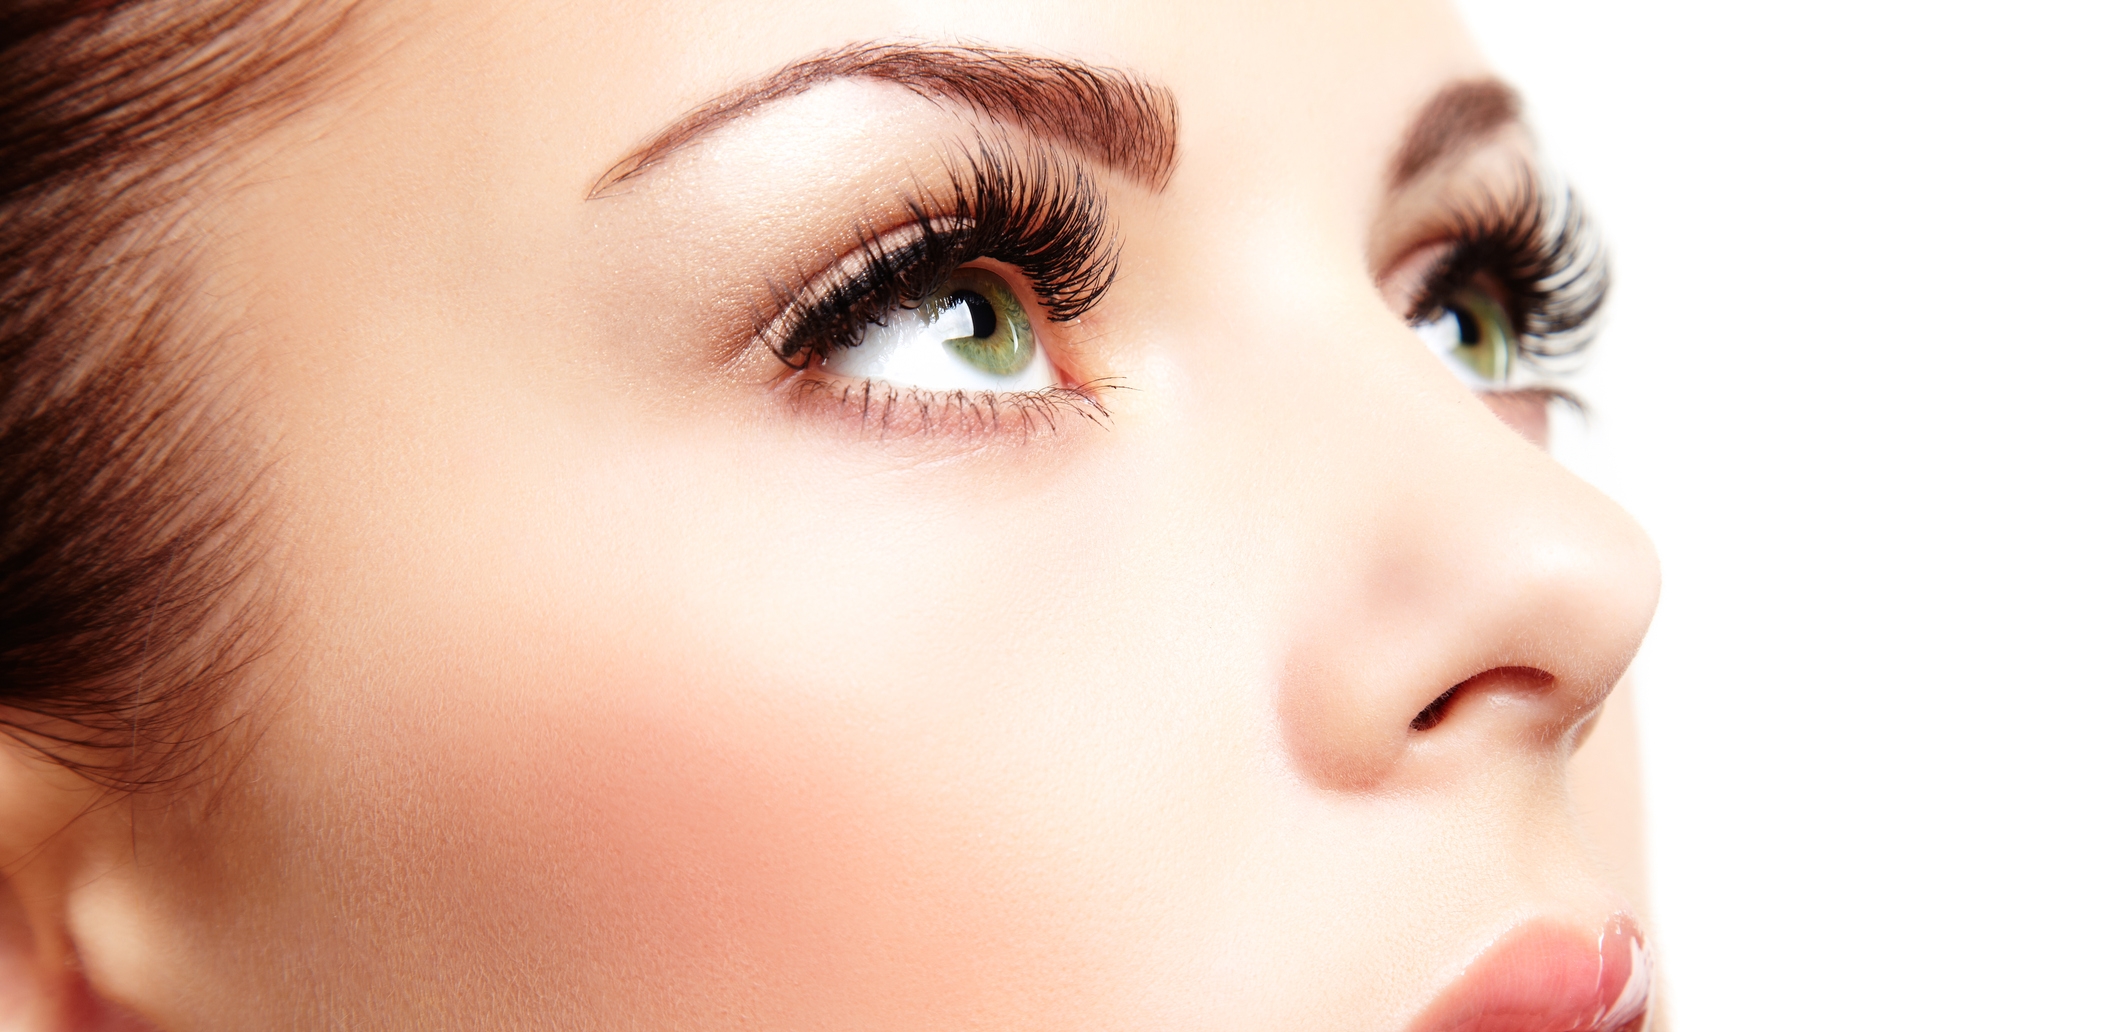 Lumigan Eye Drops: Enhancing Vision with Precision